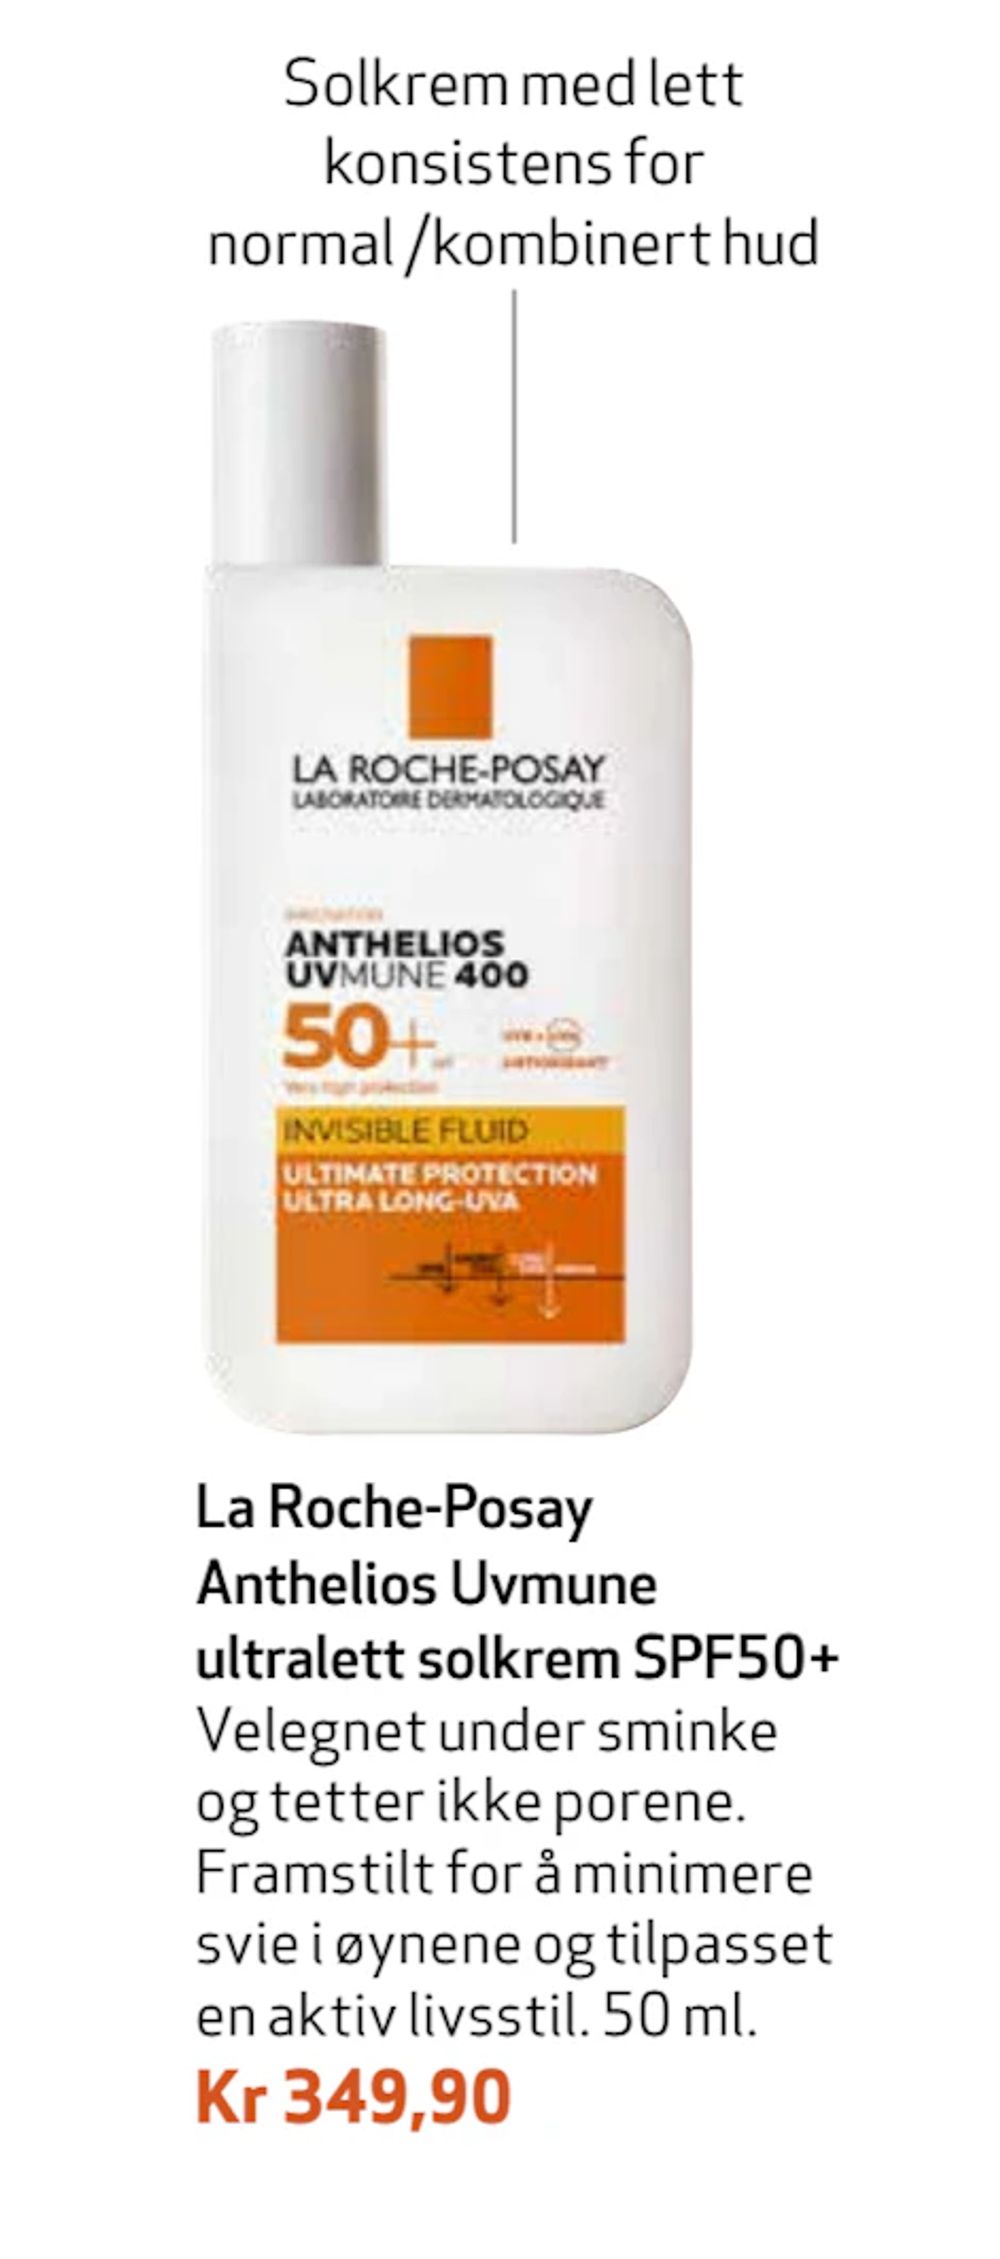 Tilbud på La Roche-Posay Anthelios Uvmune ultralett solkrem SPF50+ fra Apotek 1 til 349,90 kr